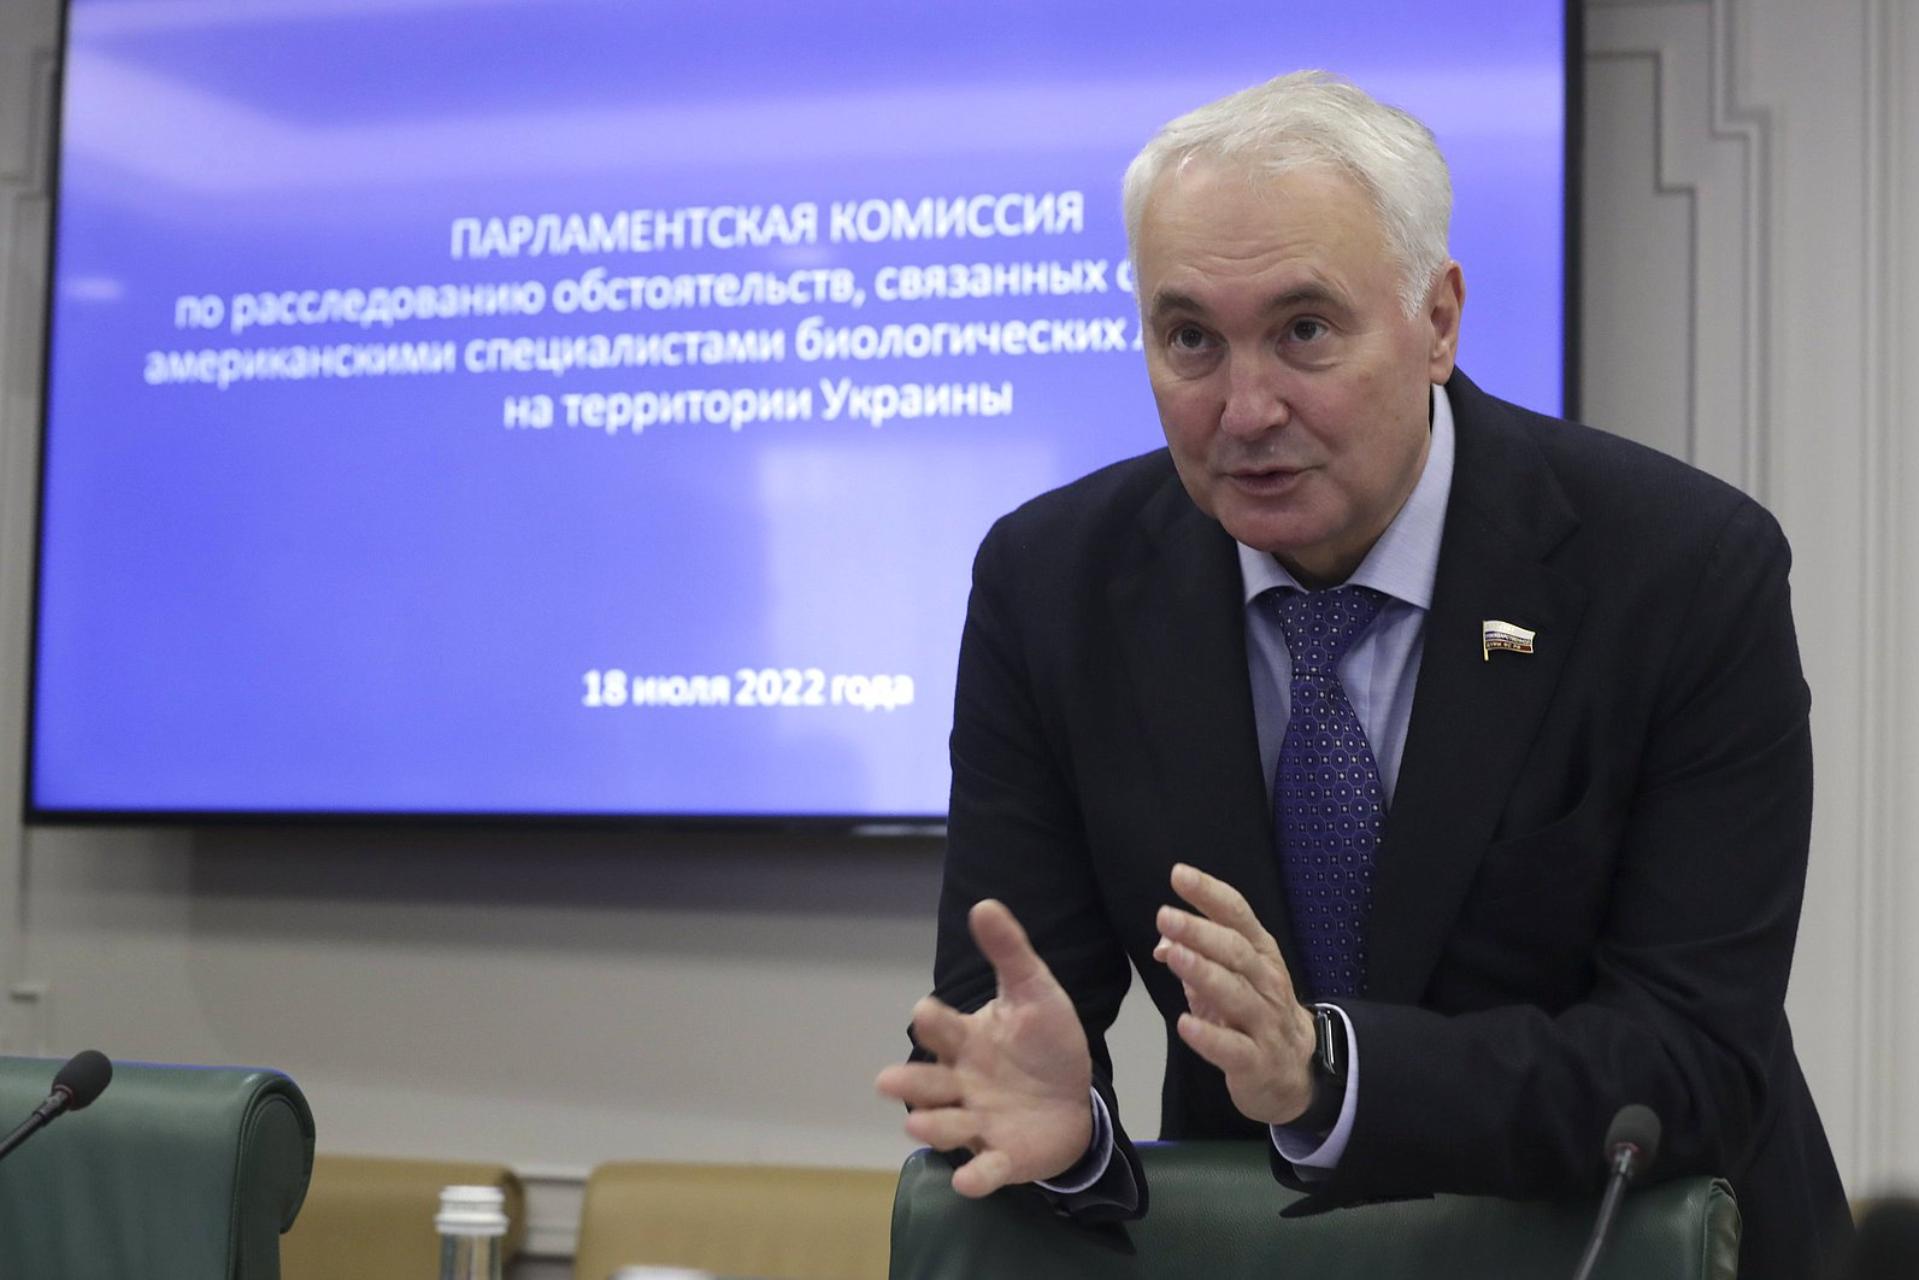 Заседание Парламентской комиссии по расследованию обстоятельств, связанных с созданием американскими специалистами биолабораторий на территории Украины